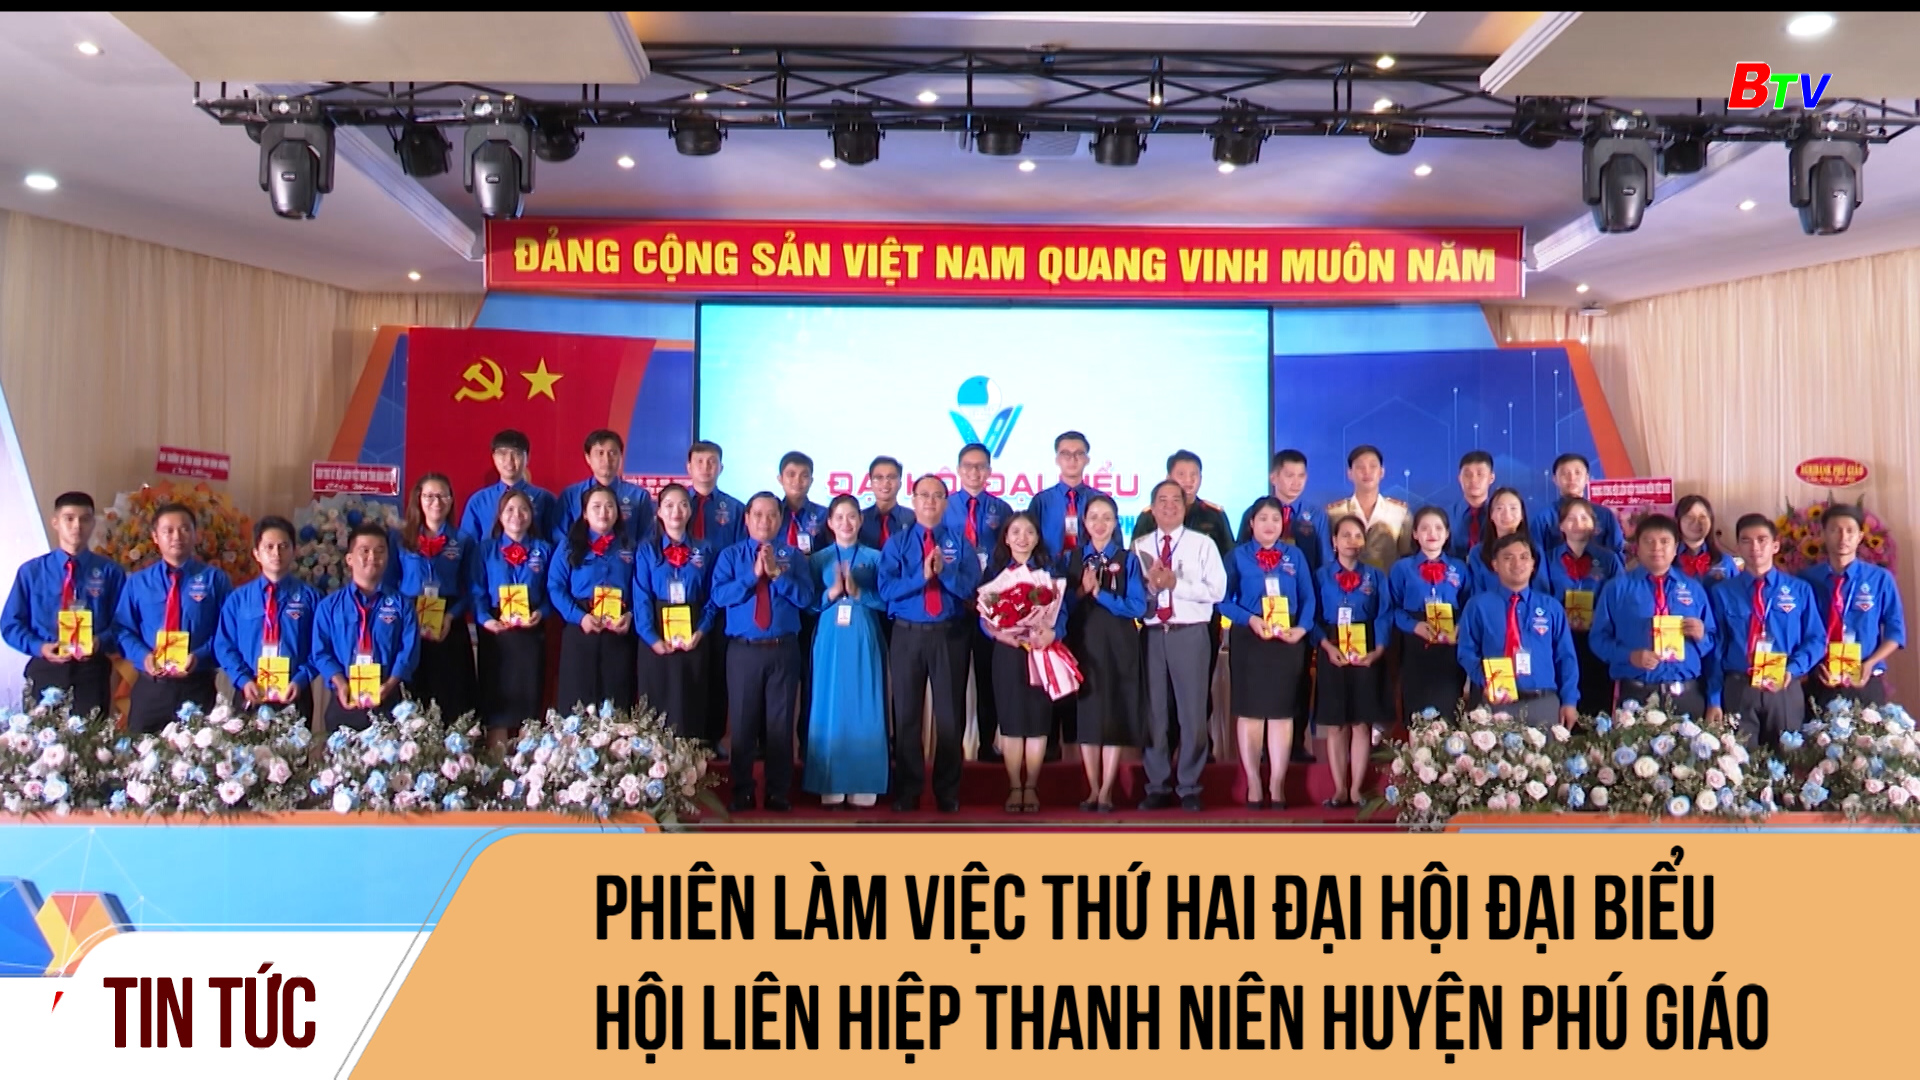 Phiên làm việc thứ hai Đại hội đại biểu Hội liên hiệp thanh niên huyện Phú Giáo	